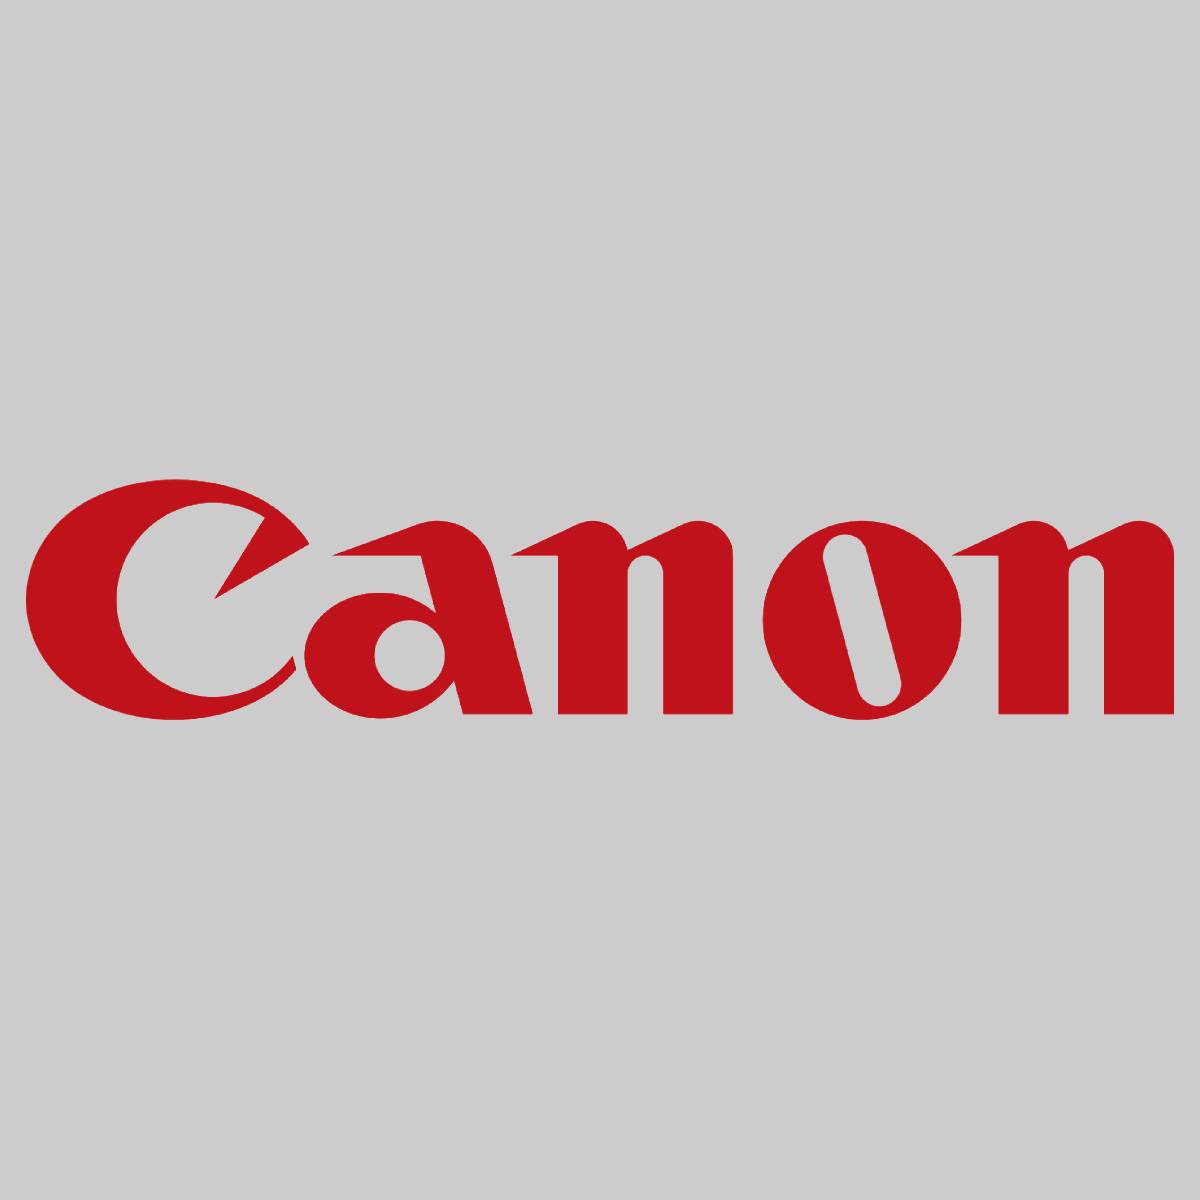 Original Canon CEXV19 Toner Yellow 0400B002 für imagePRESS C1 C1 Plus Neu OVP^